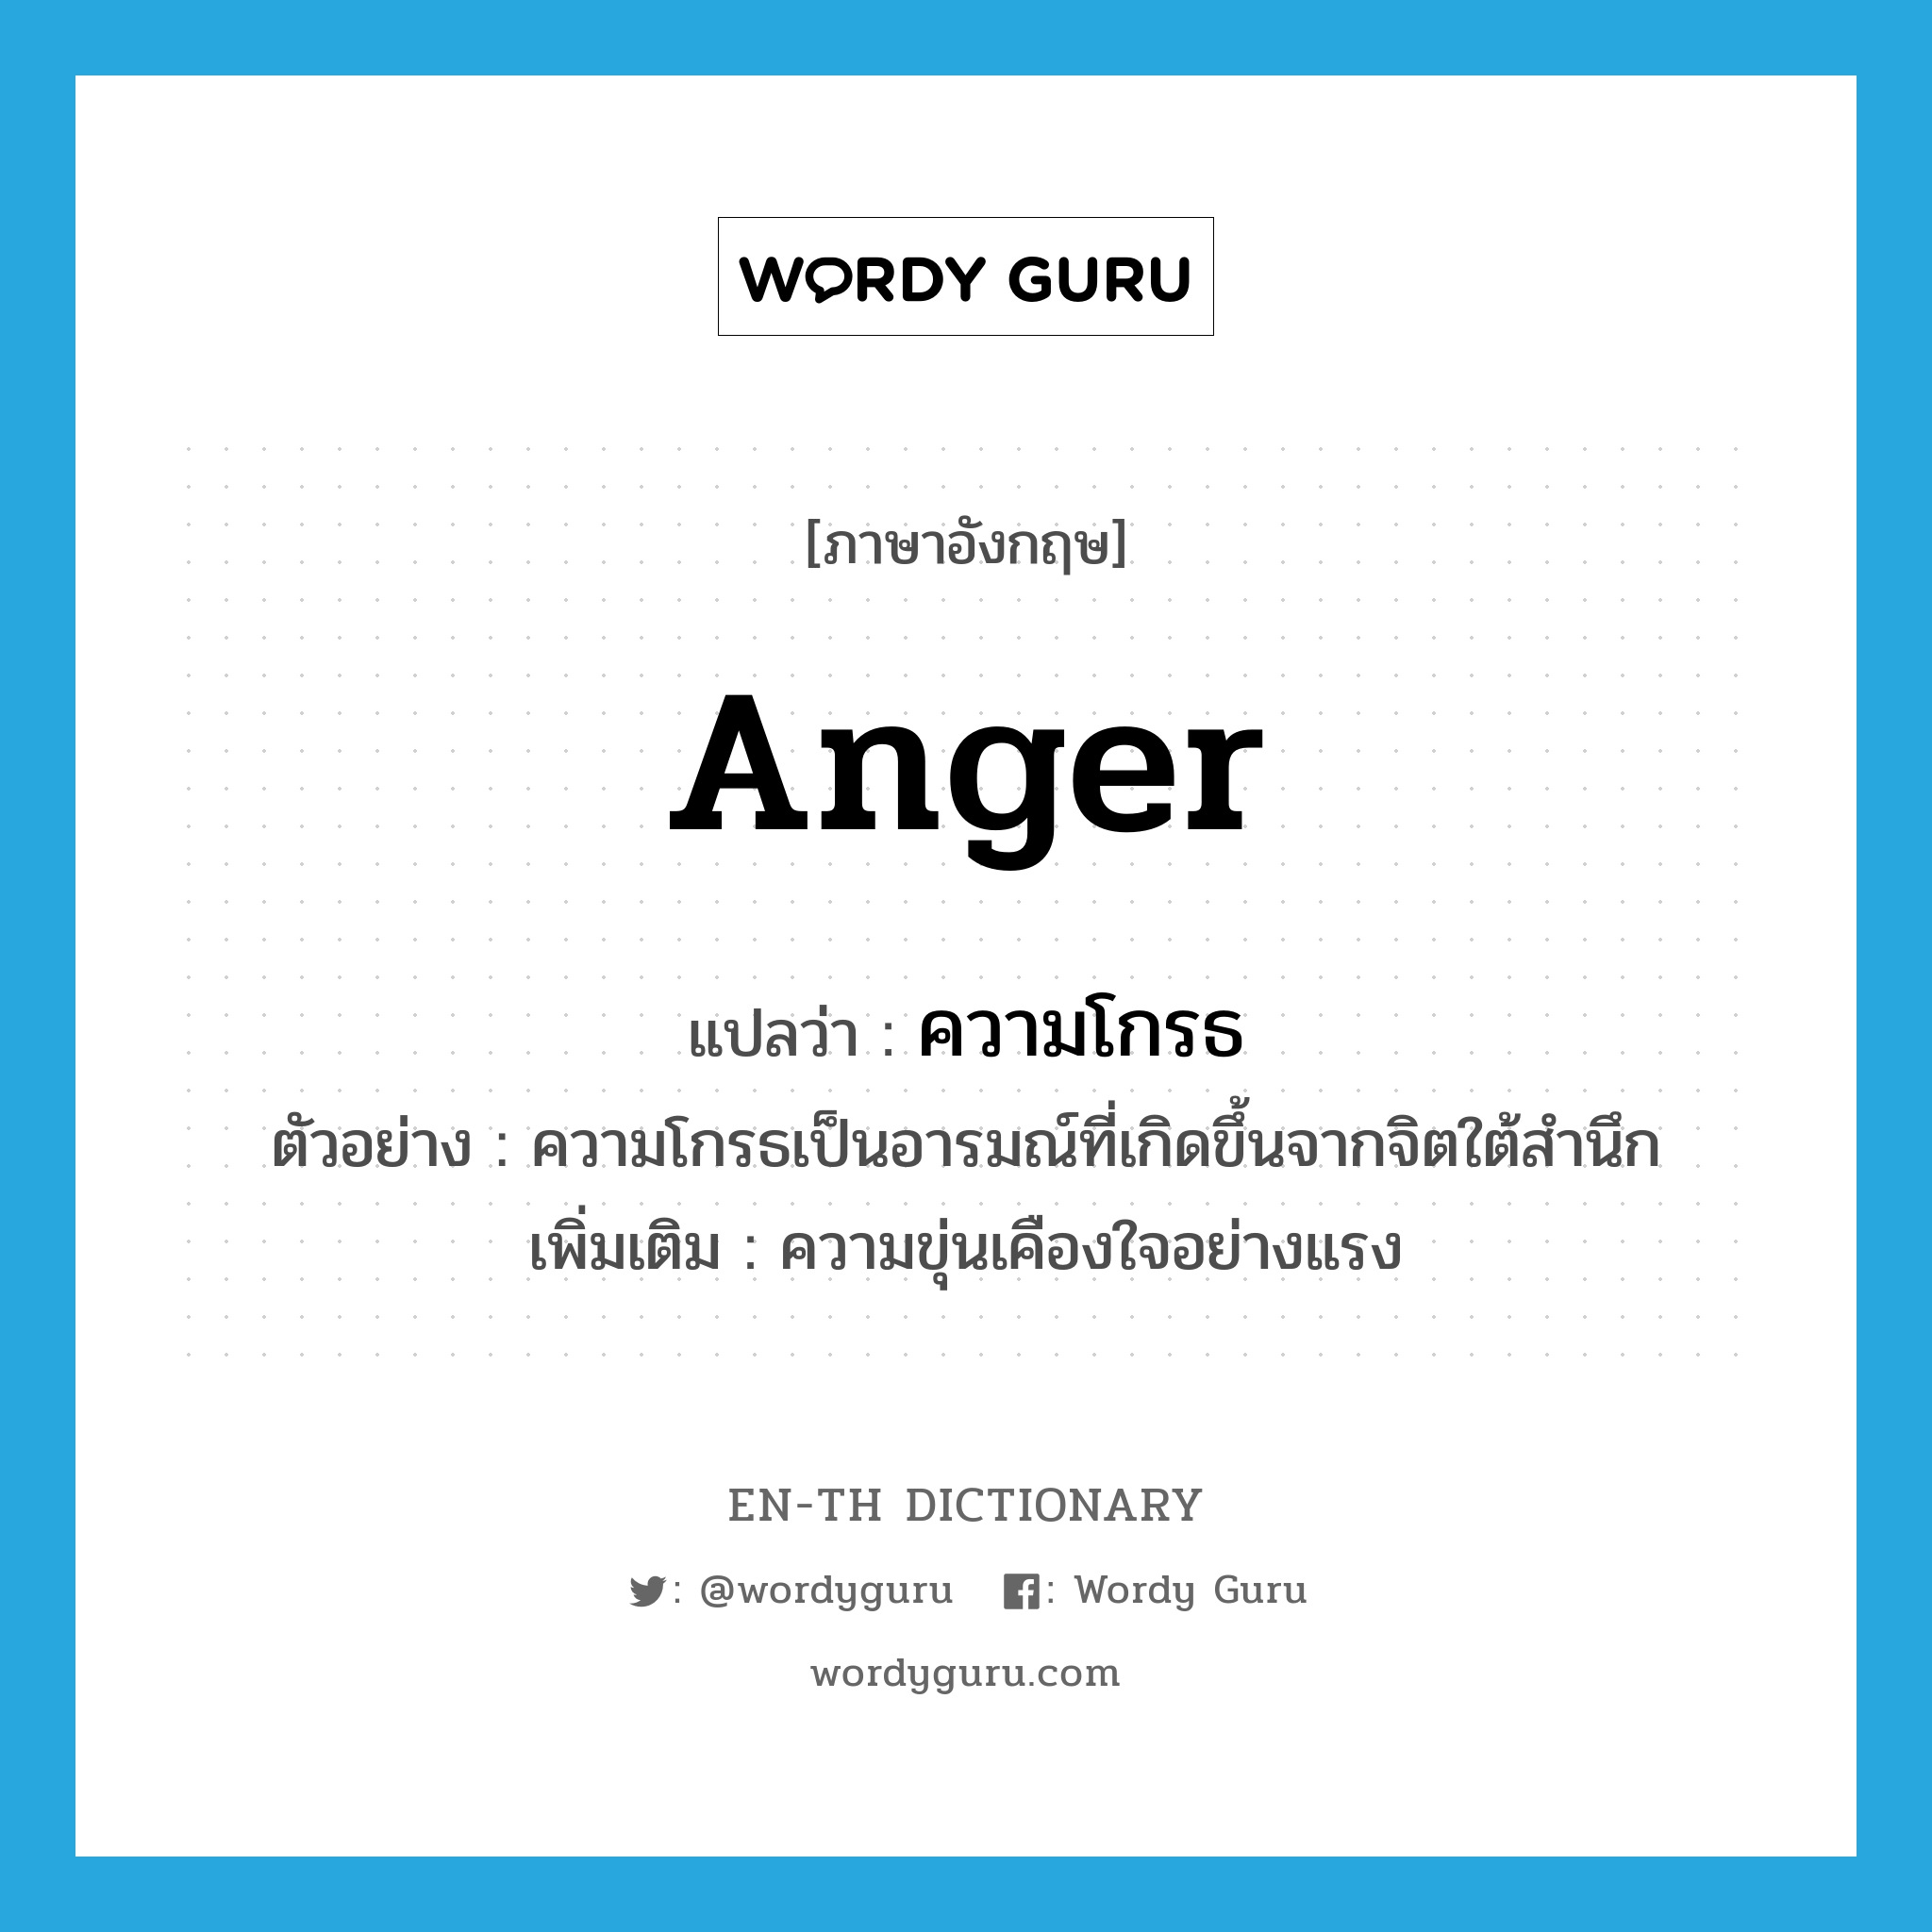 anger แปลว่า?, คำศัพท์ภาษาอังกฤษ anger แปลว่า ความโกรธ ประเภท N ตัวอย่าง ความโกรธเป็นอารมณ์ที่เกิดขึ้นจากจิตใต้สำนึก เพิ่มเติม ความขุ่นเคืองใจอย่างแรง หมวด N